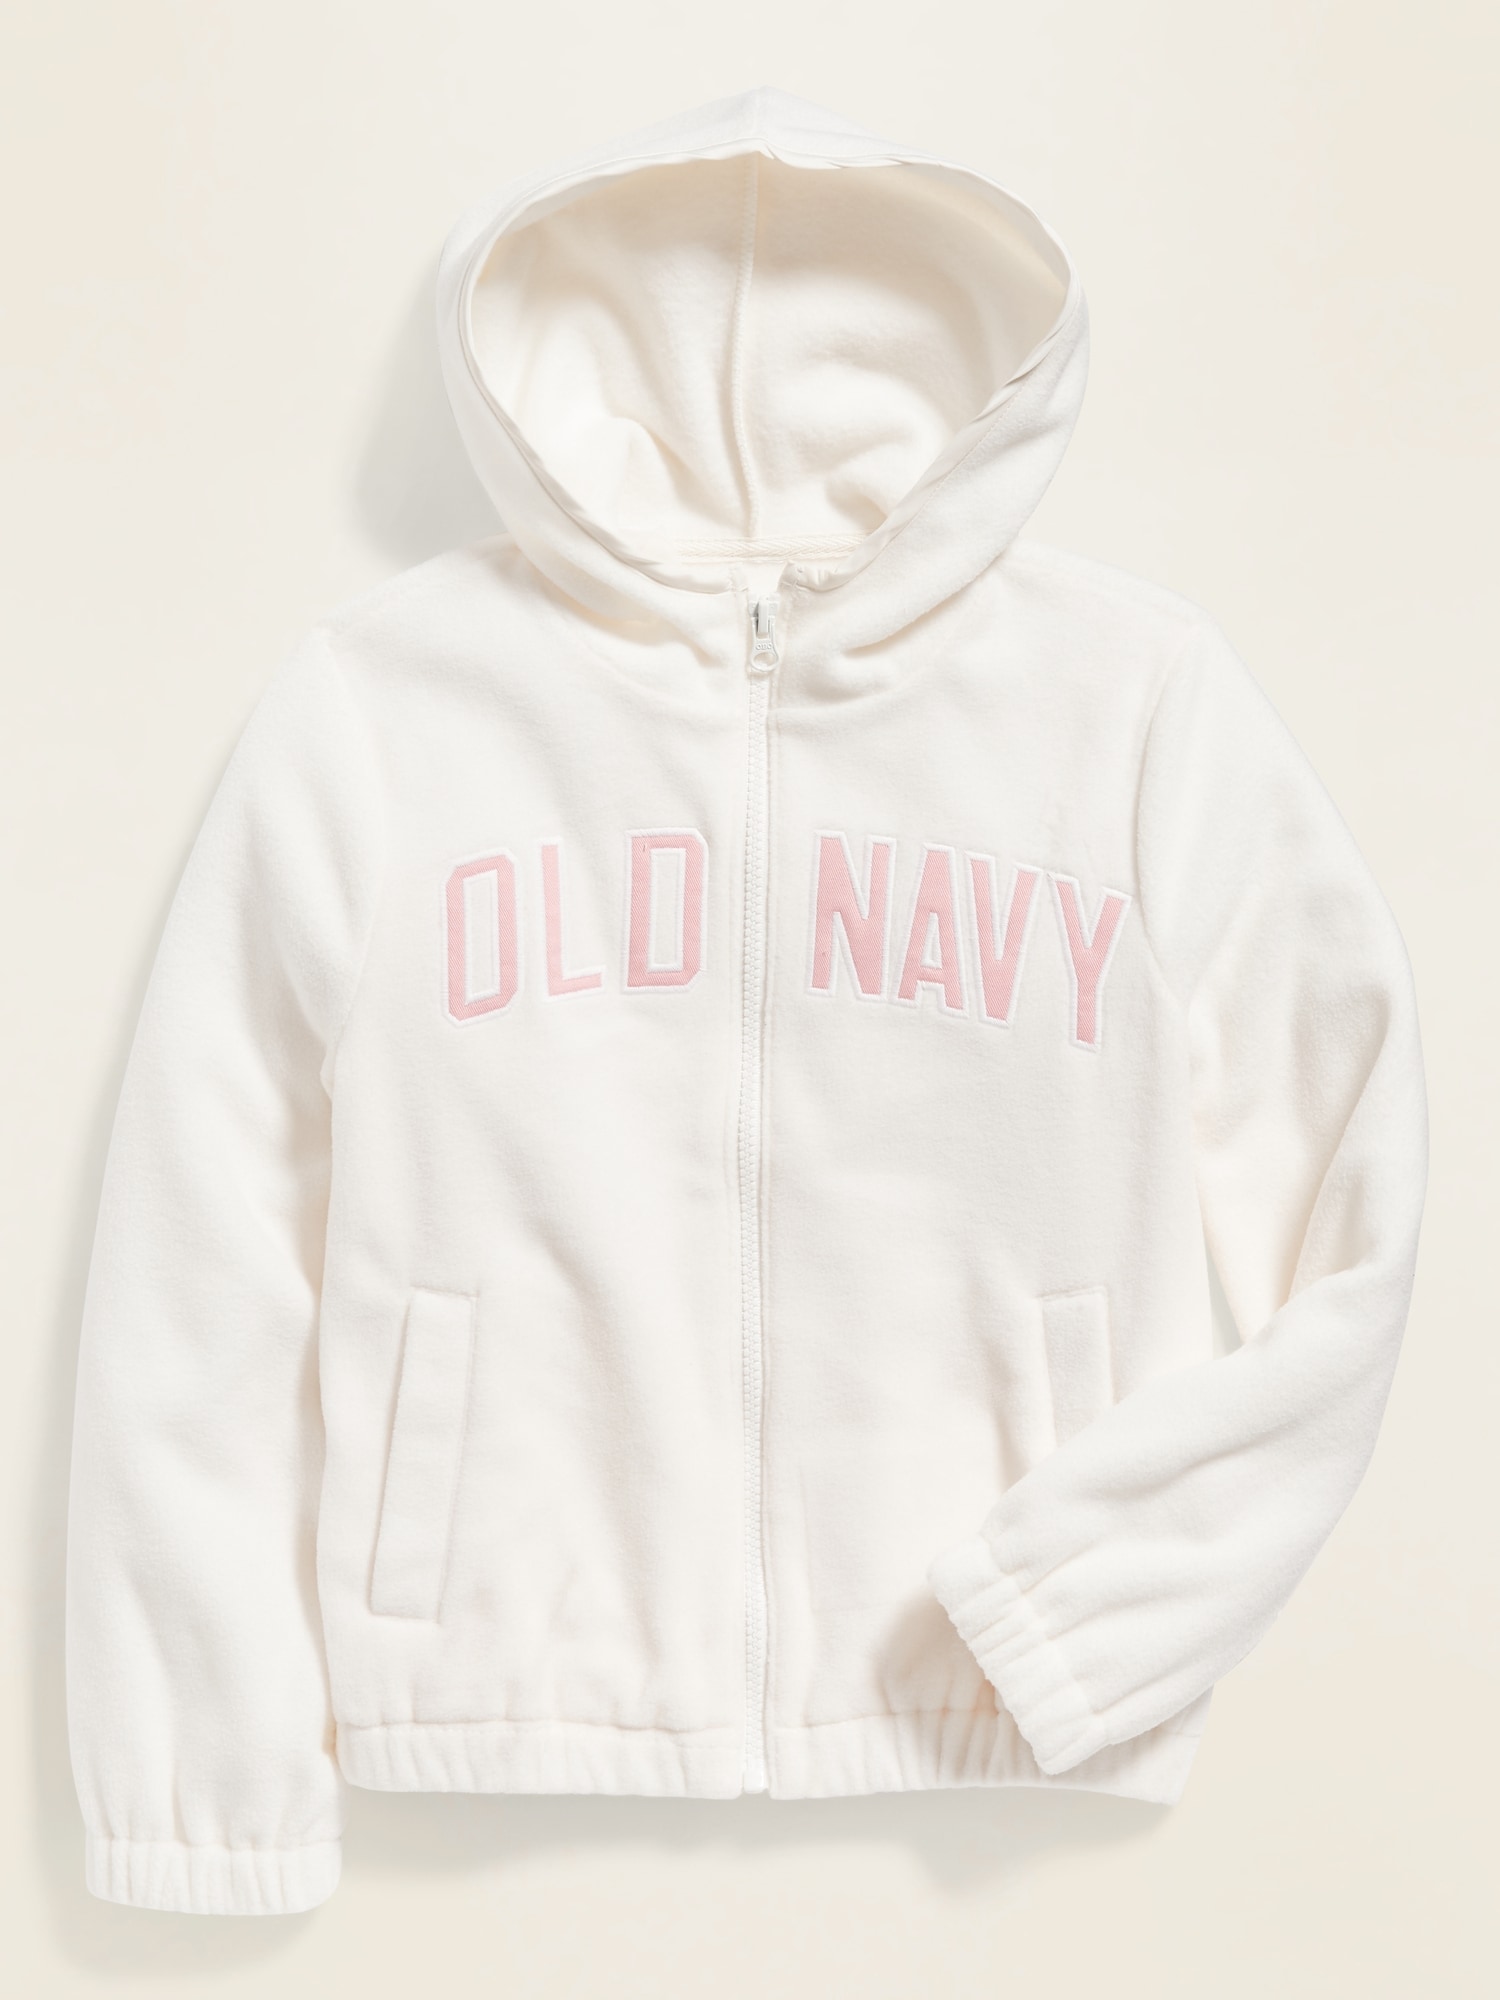 old navy zip up fleece